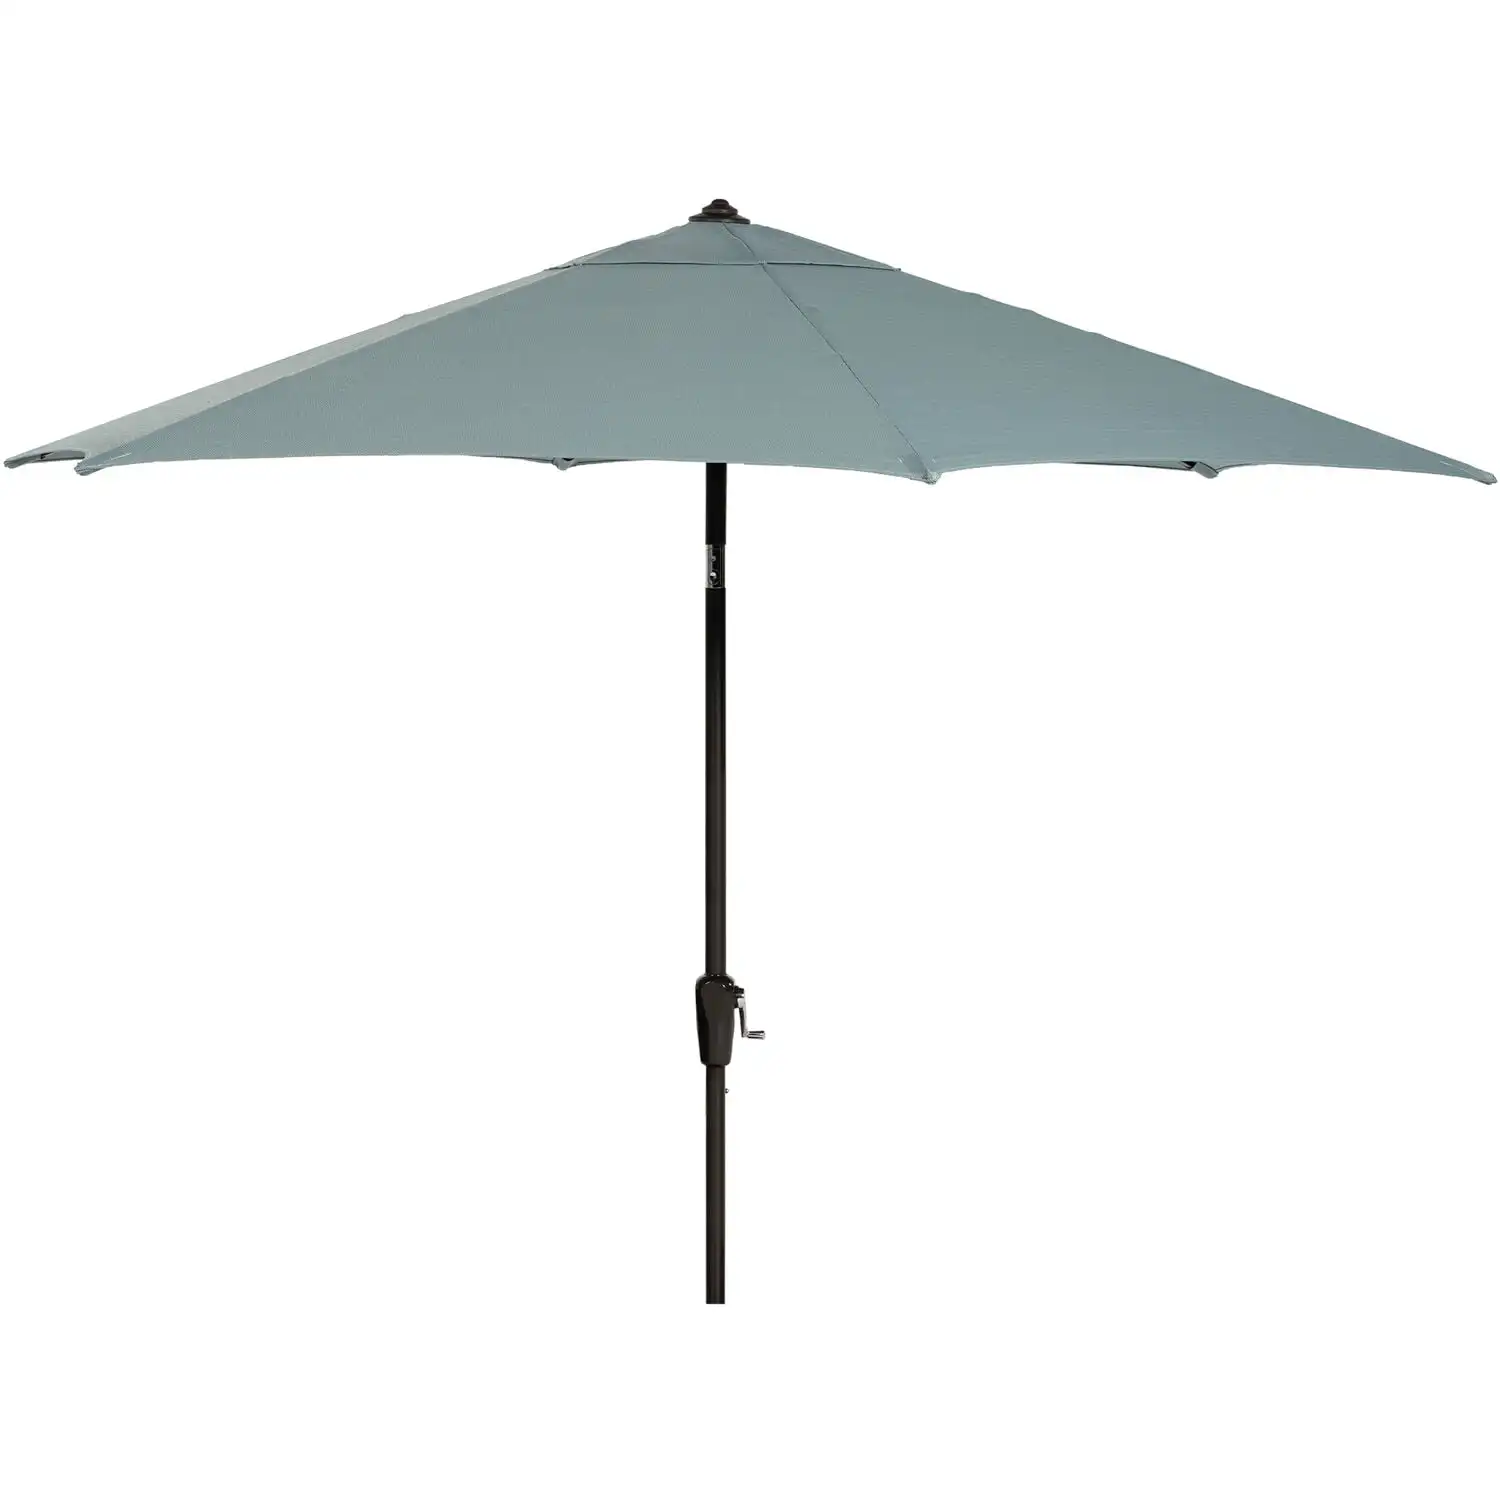 

Hanover Montclair 9-Ft. Market Outdoor Umbrella in Ocean Blue